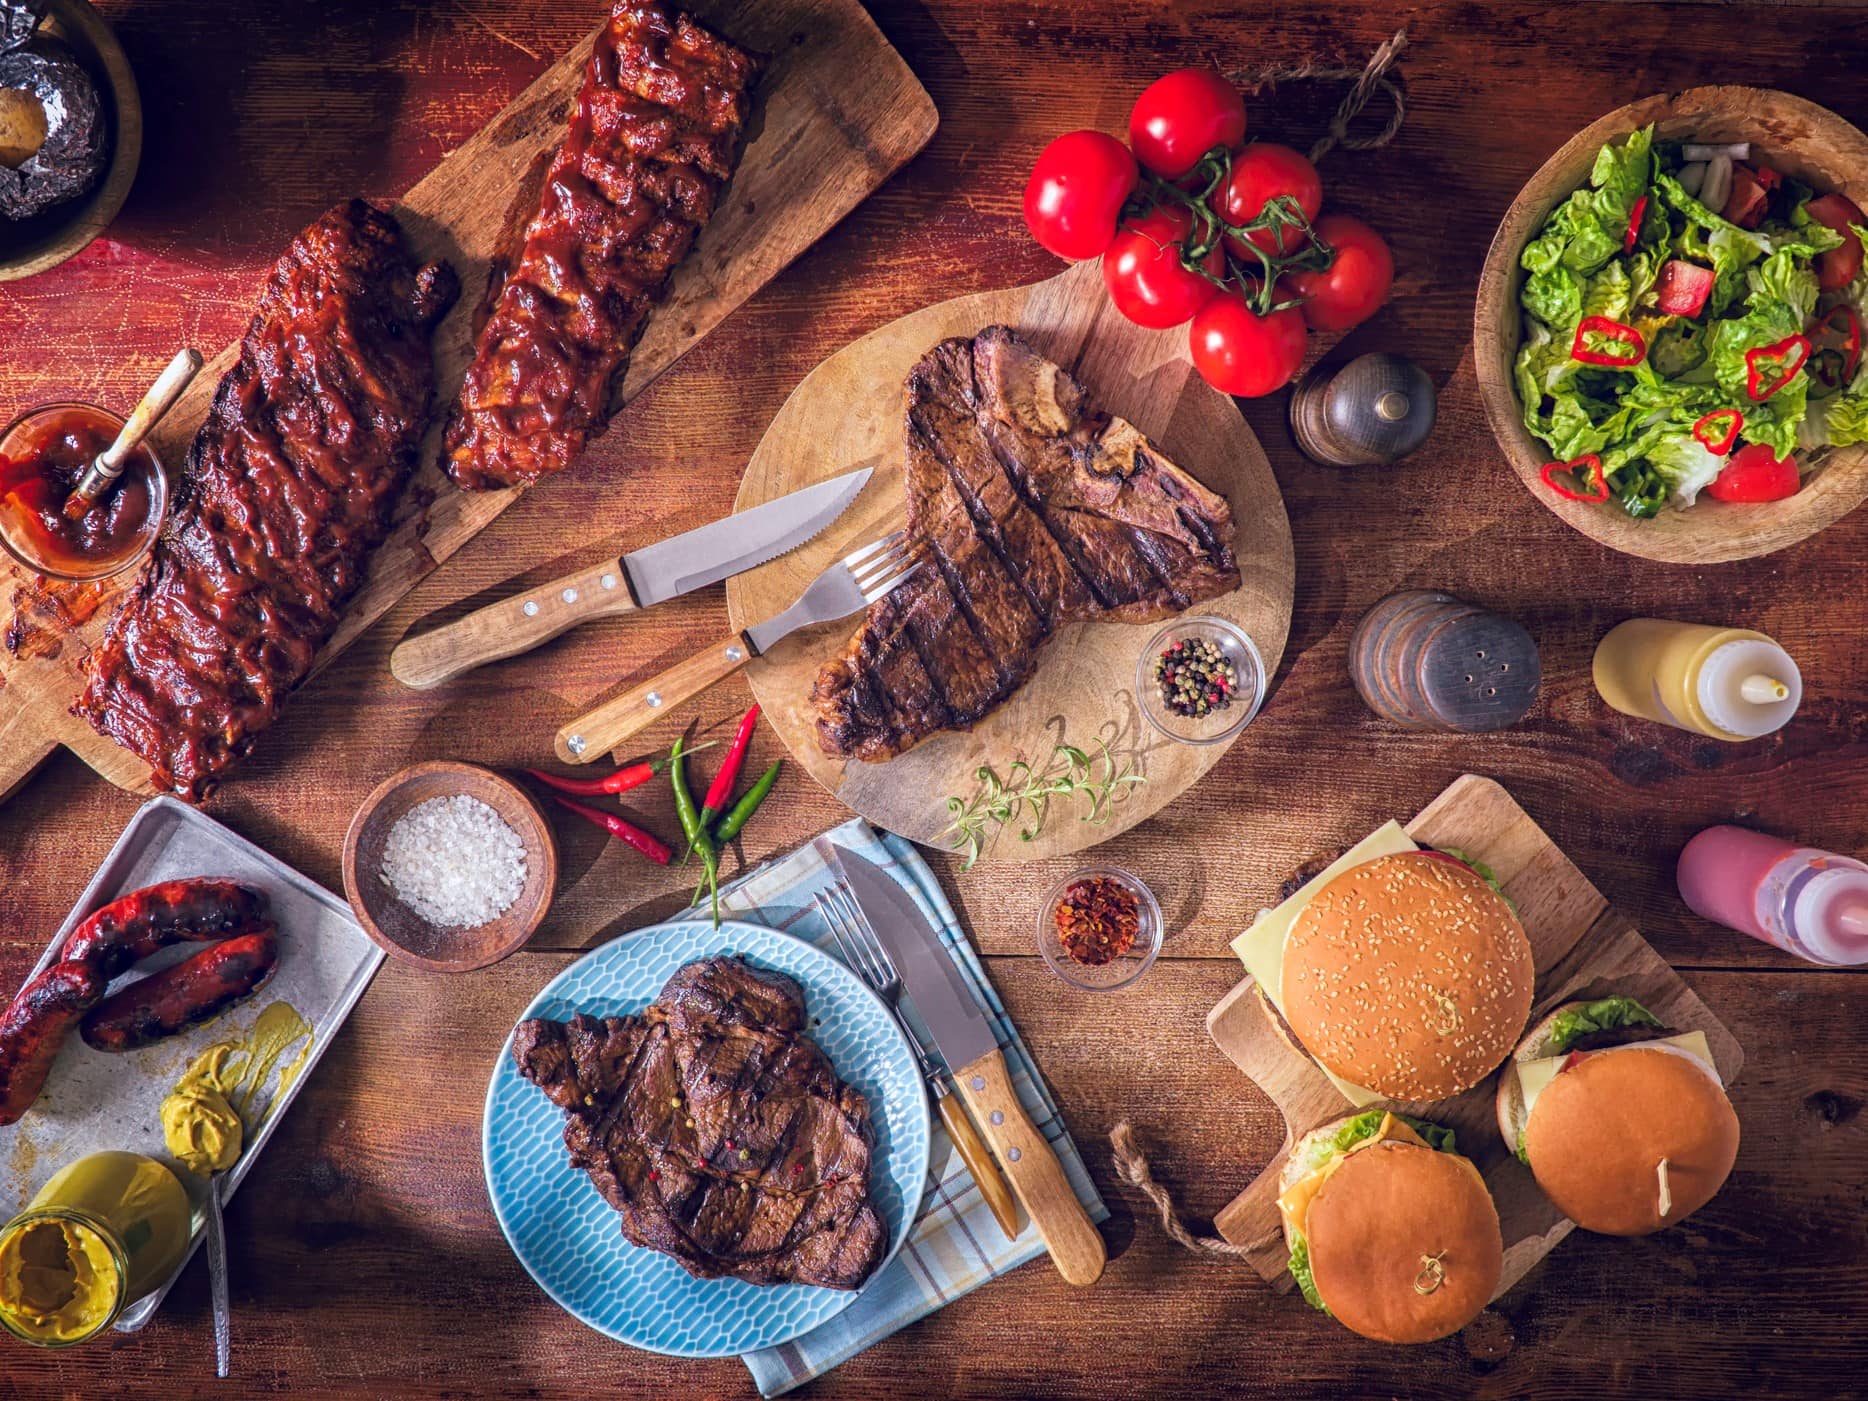 Cow-Sharing Produkte gegrillt auf Holzplatten serviert. Steaks, Würste, Burger und Rippchen. Dazu Salat und Gemüse als Dekoration. Aufnahme aus der Vogelperspektive.